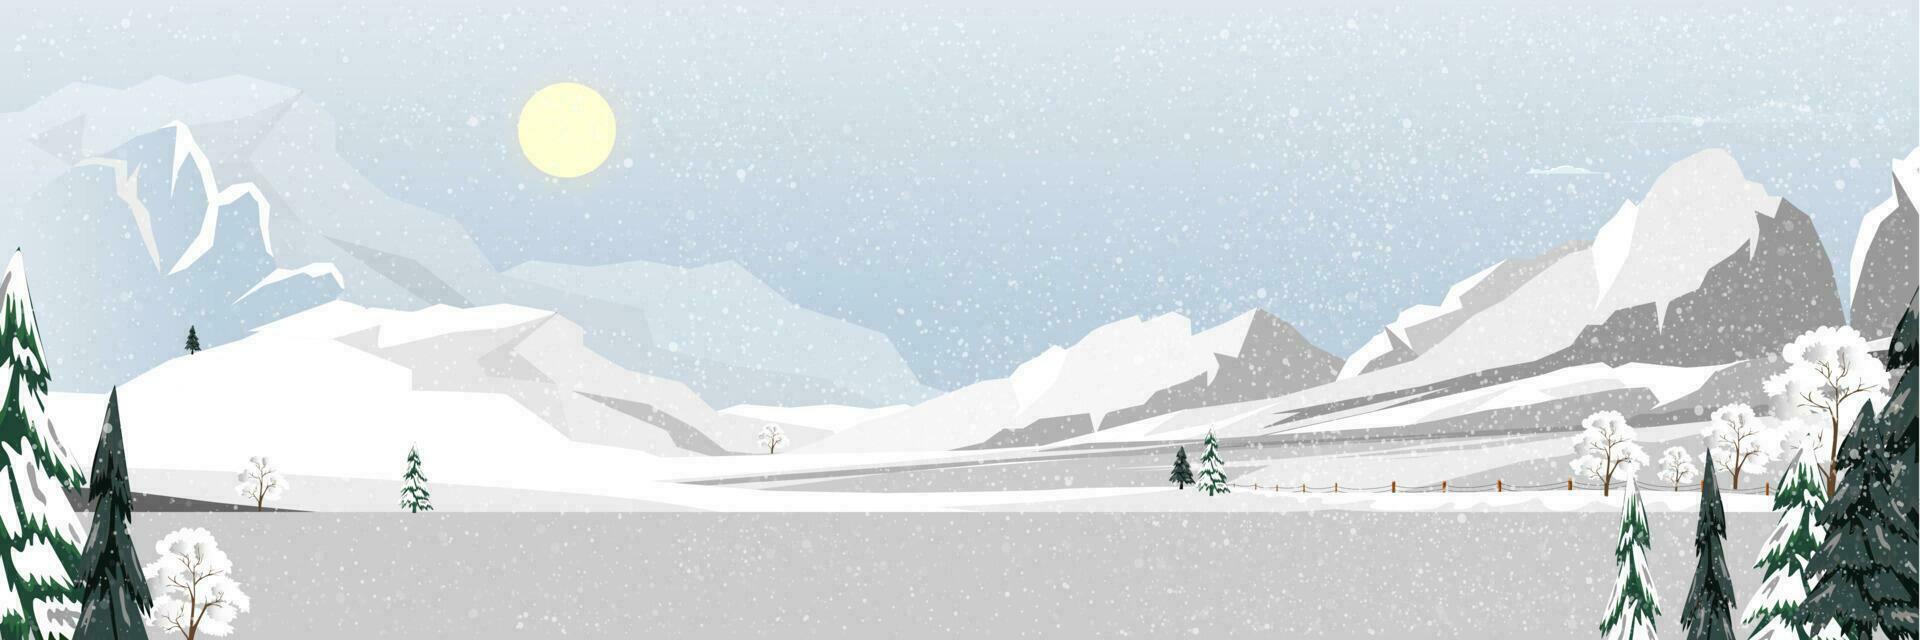 Winter Wald Landschaft mit bedeckt auf Frost Bäume im das Schneeverwehungen mit schön Himmel.Vektor Karikatur Horizont Nadelbaum Wald mit Schnee fallen, hintergrund Banner zum Weihnachten, neu Jahr 2024 Karte vektor